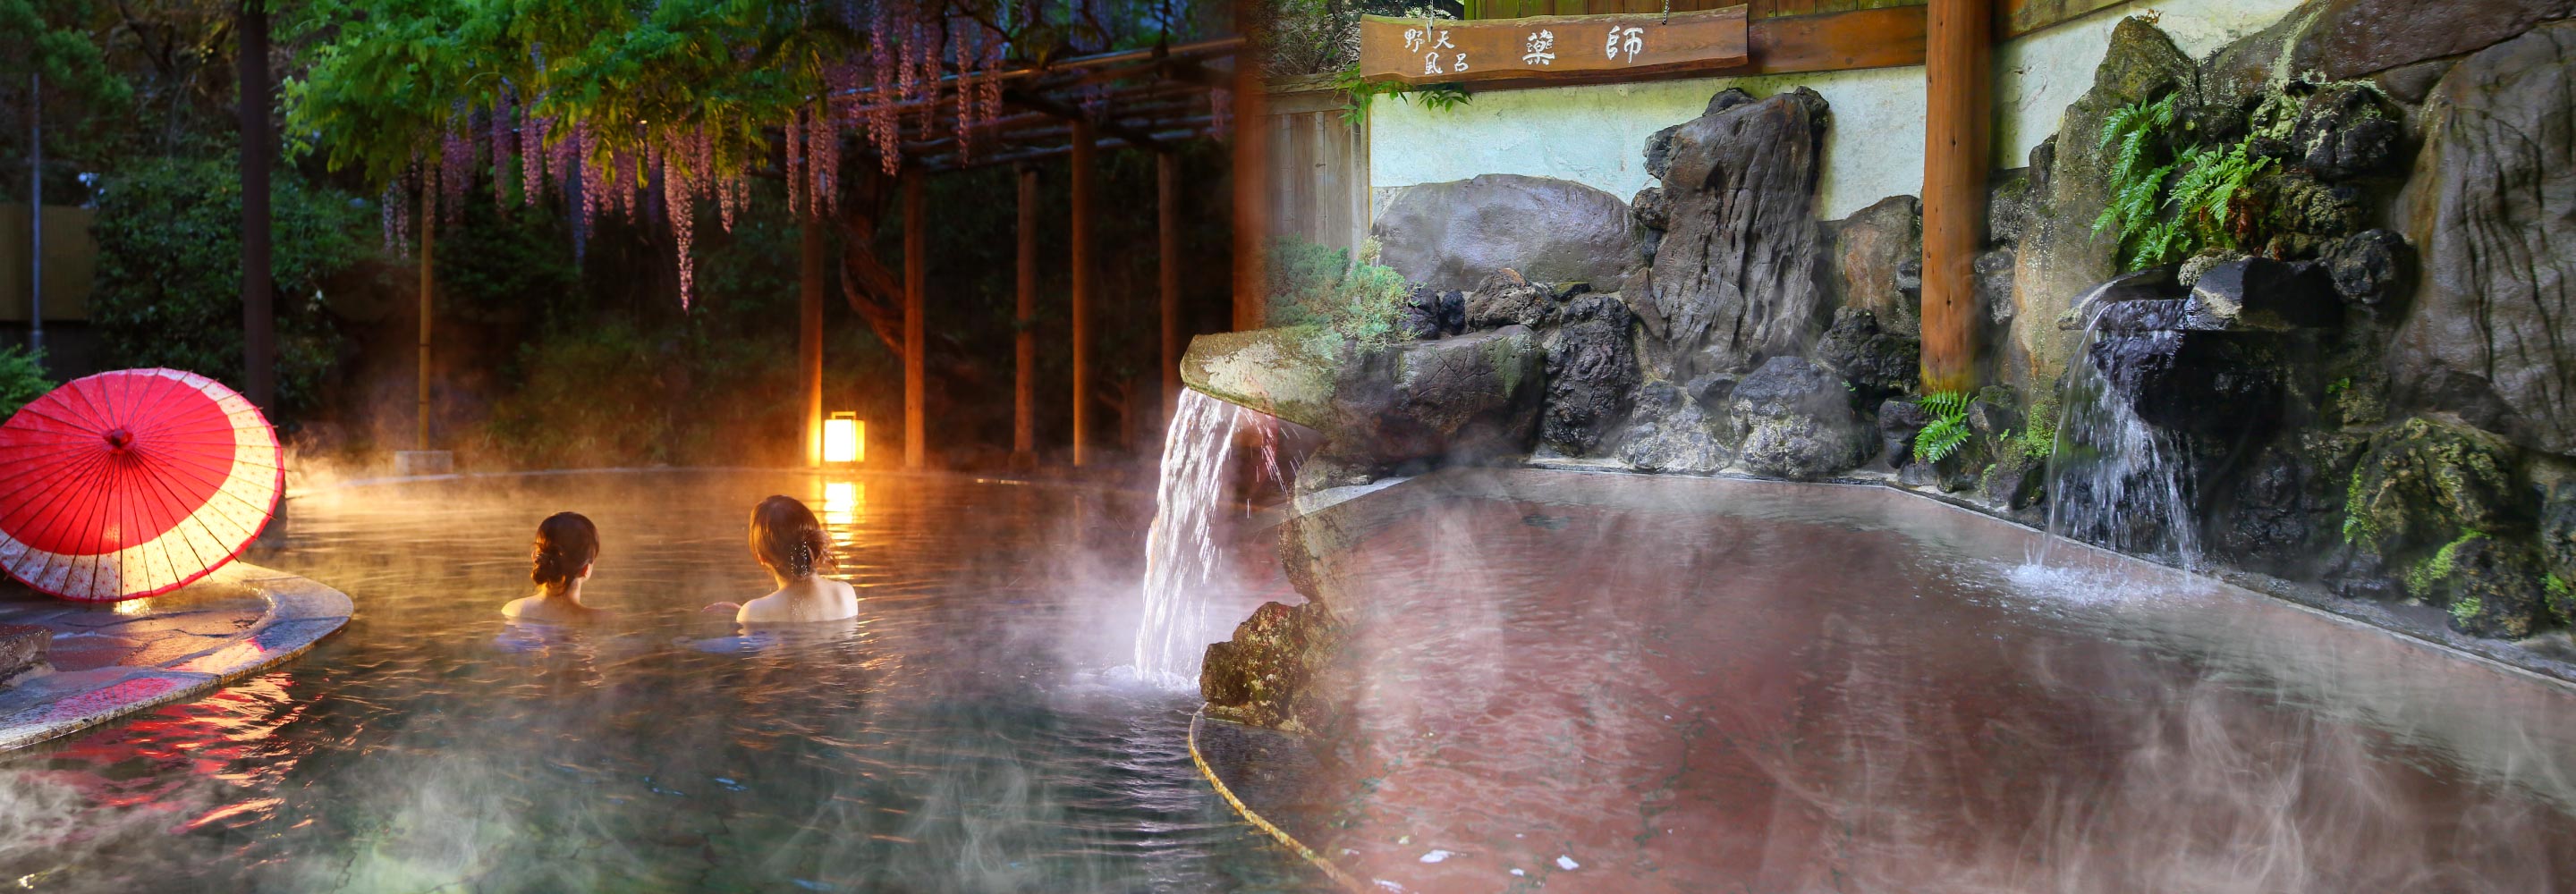 江戸時代から栄えた湯治の名湯と、創作バイキングを楽しむ温泉宿